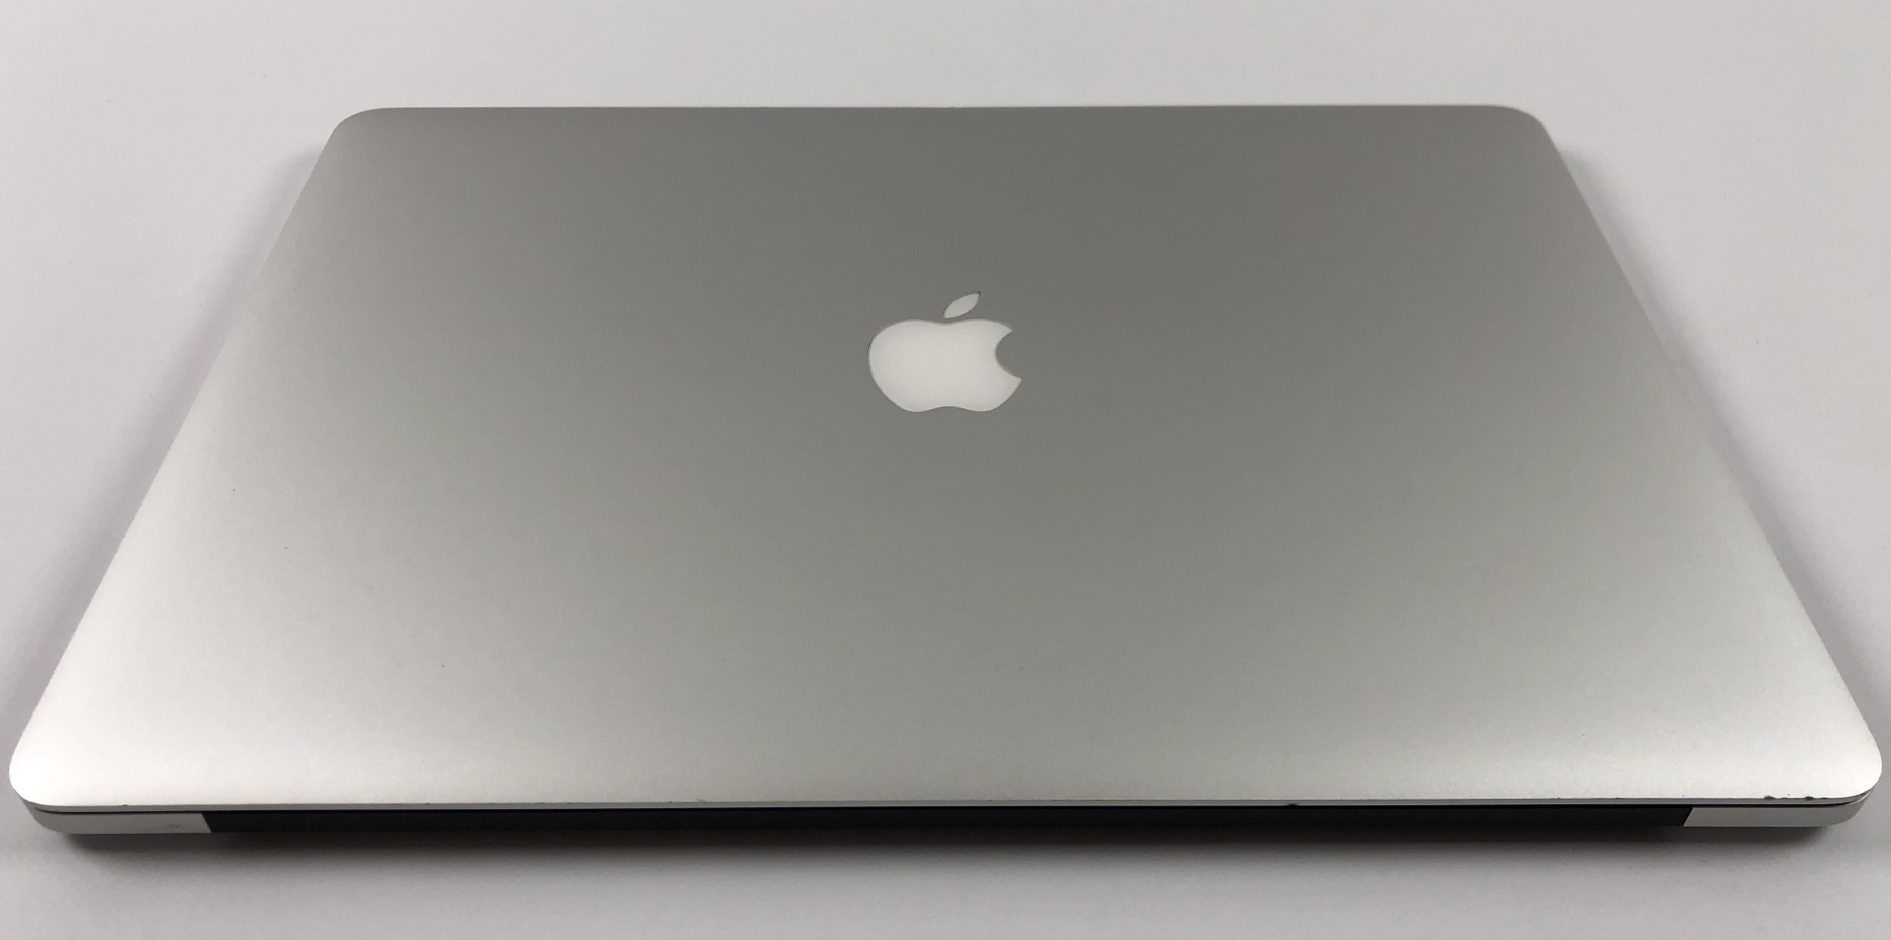 MacBook Pro Retina 15" Mid 2015 (Intel Quad-Core i7 2.2 GHz 16 GB RAM 256 GB SSD), Intel Quad-Core i7 2.2 GHz, 16 GB RAM, 256 GB SSD, bild 2